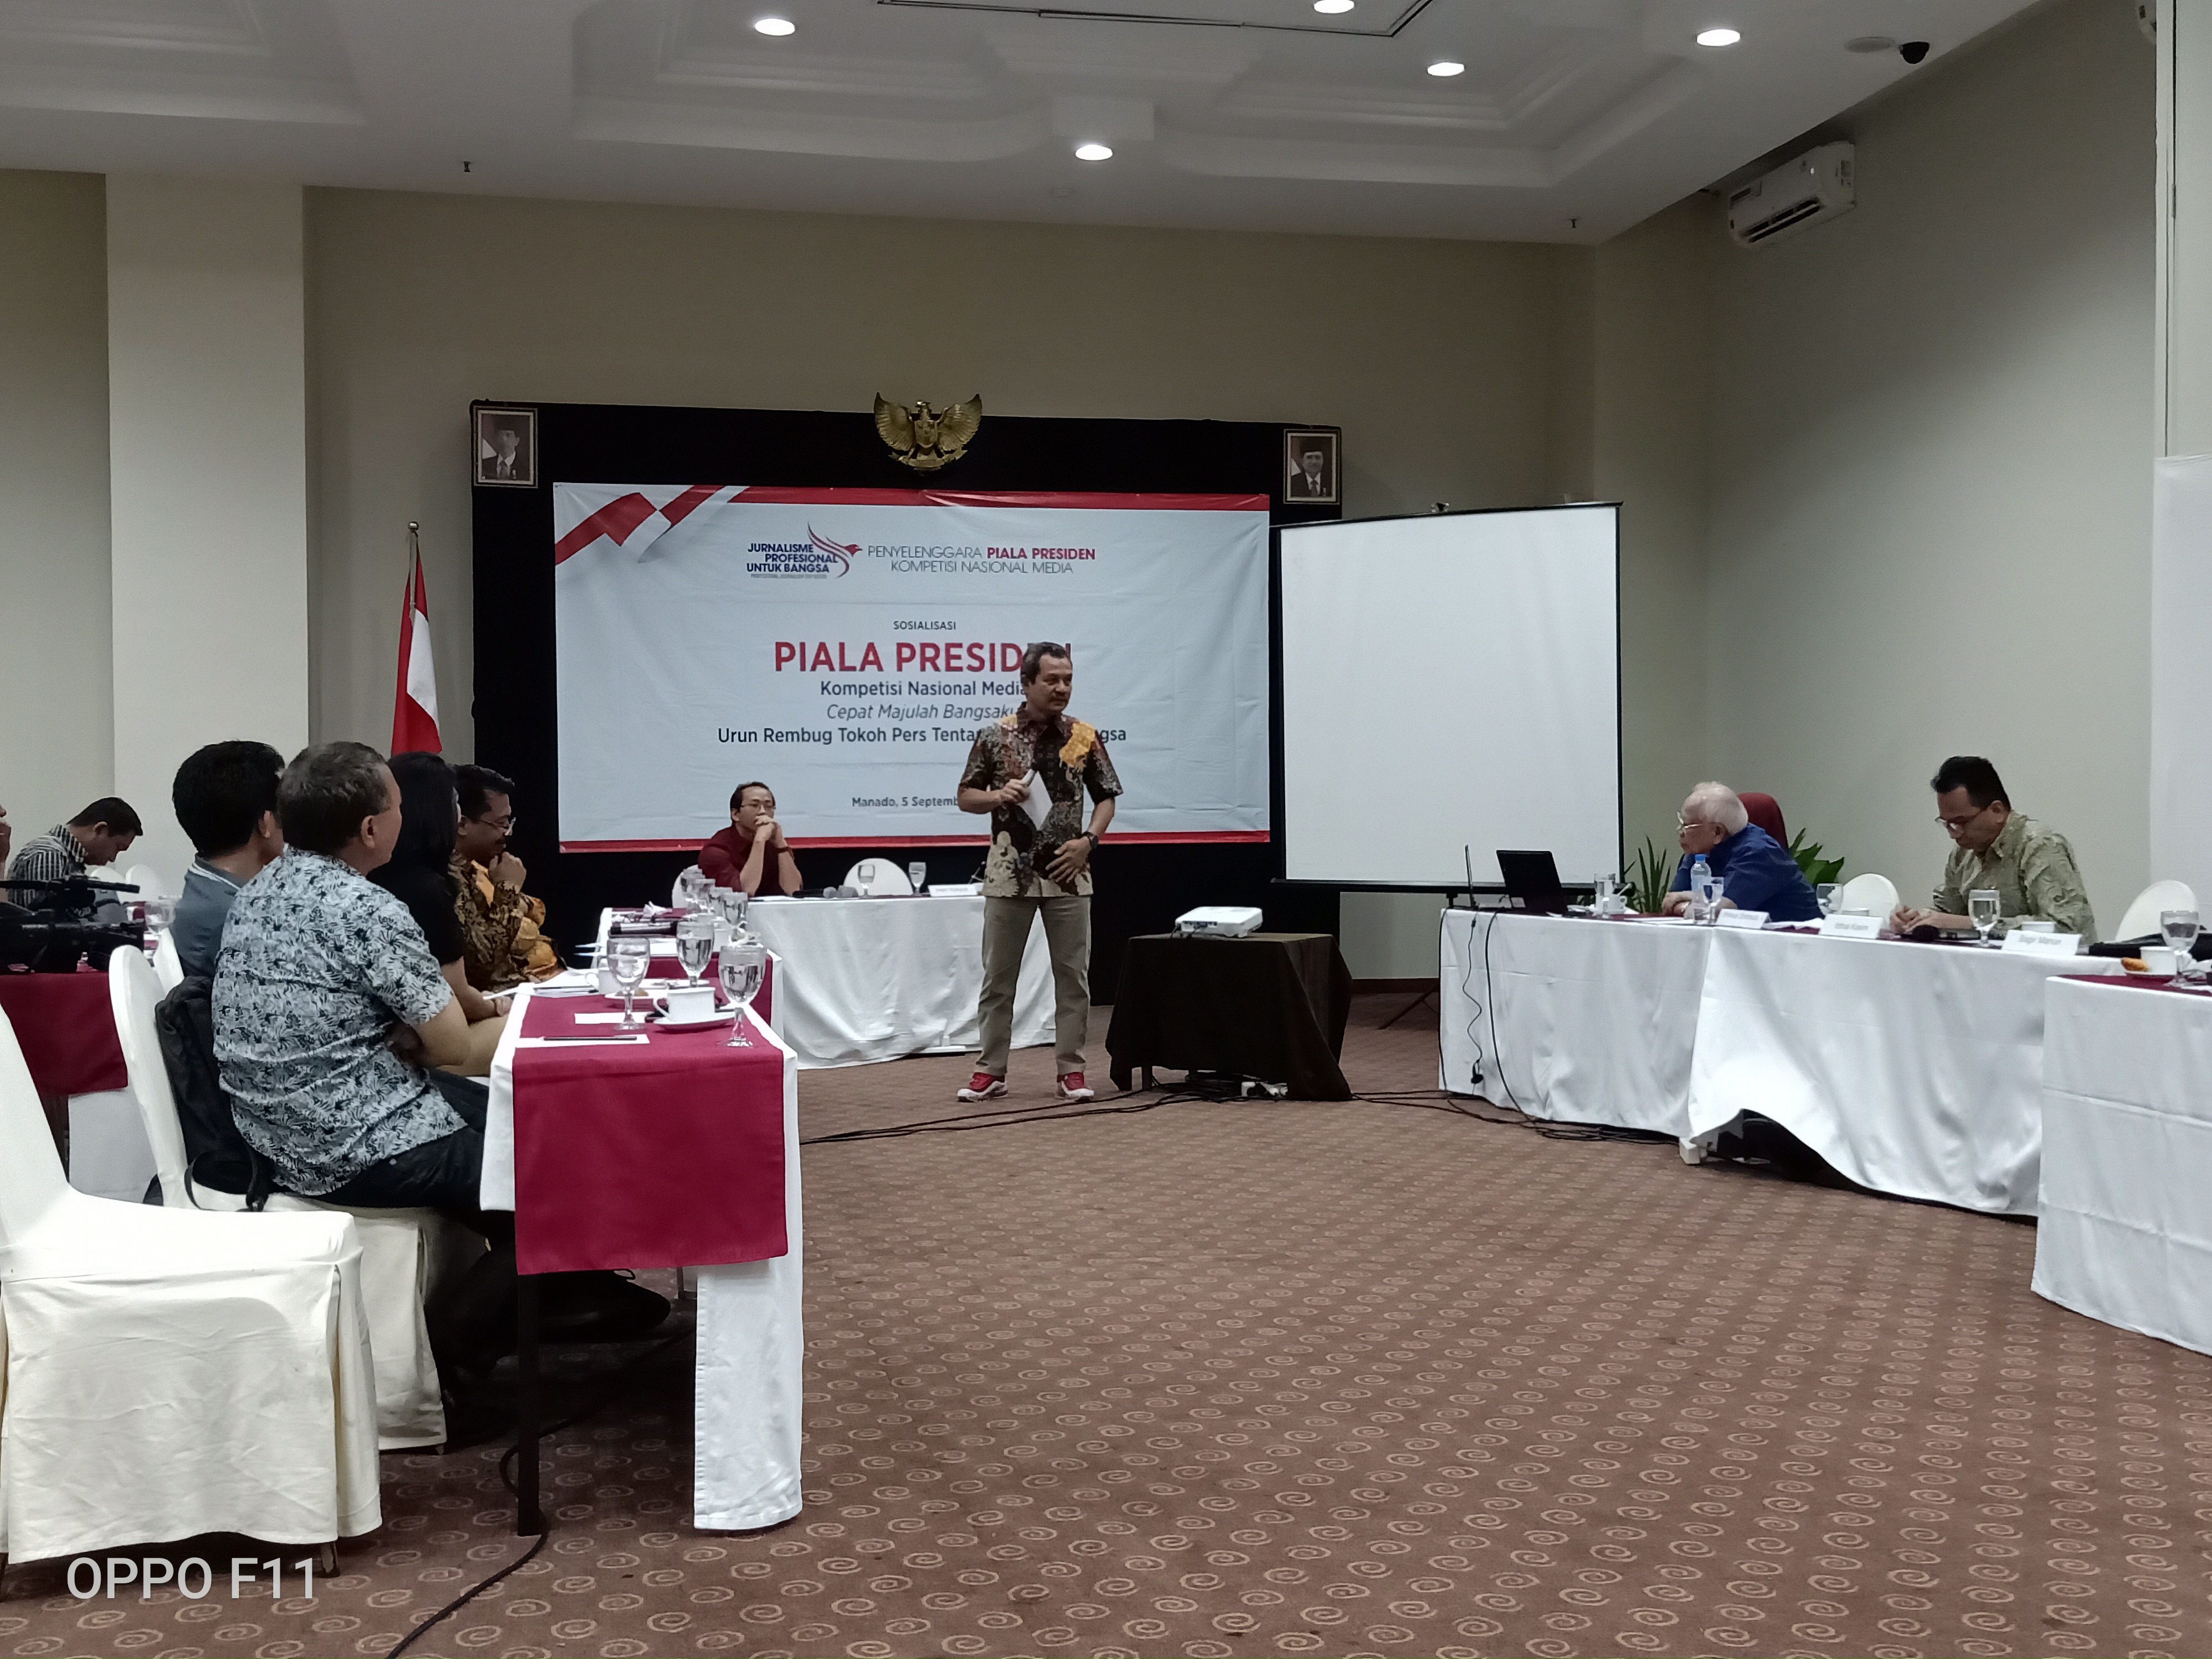 Penyelenggara Piala Presiden Kompetisi  Nasional Media untuk Jurnalis Gelar Sosialisasi di Manado